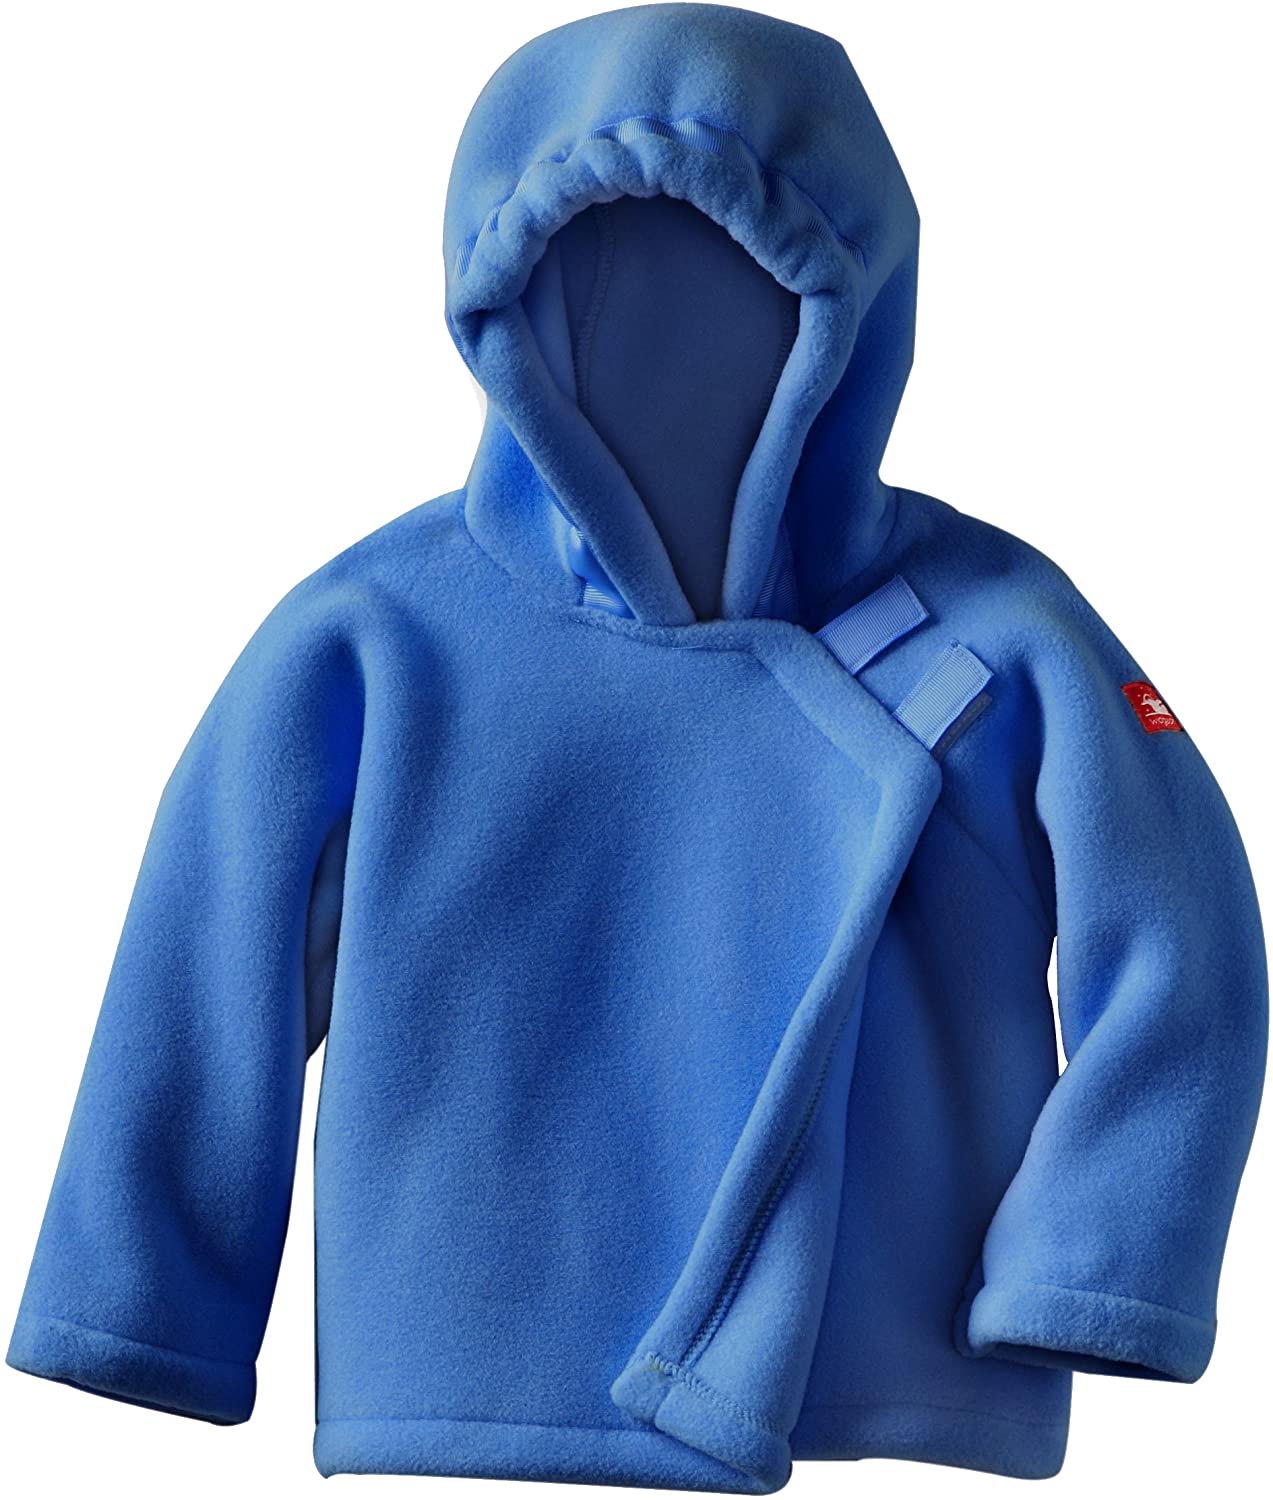 Monogrammed Fleece Jacket for Girls {Royal Blue}